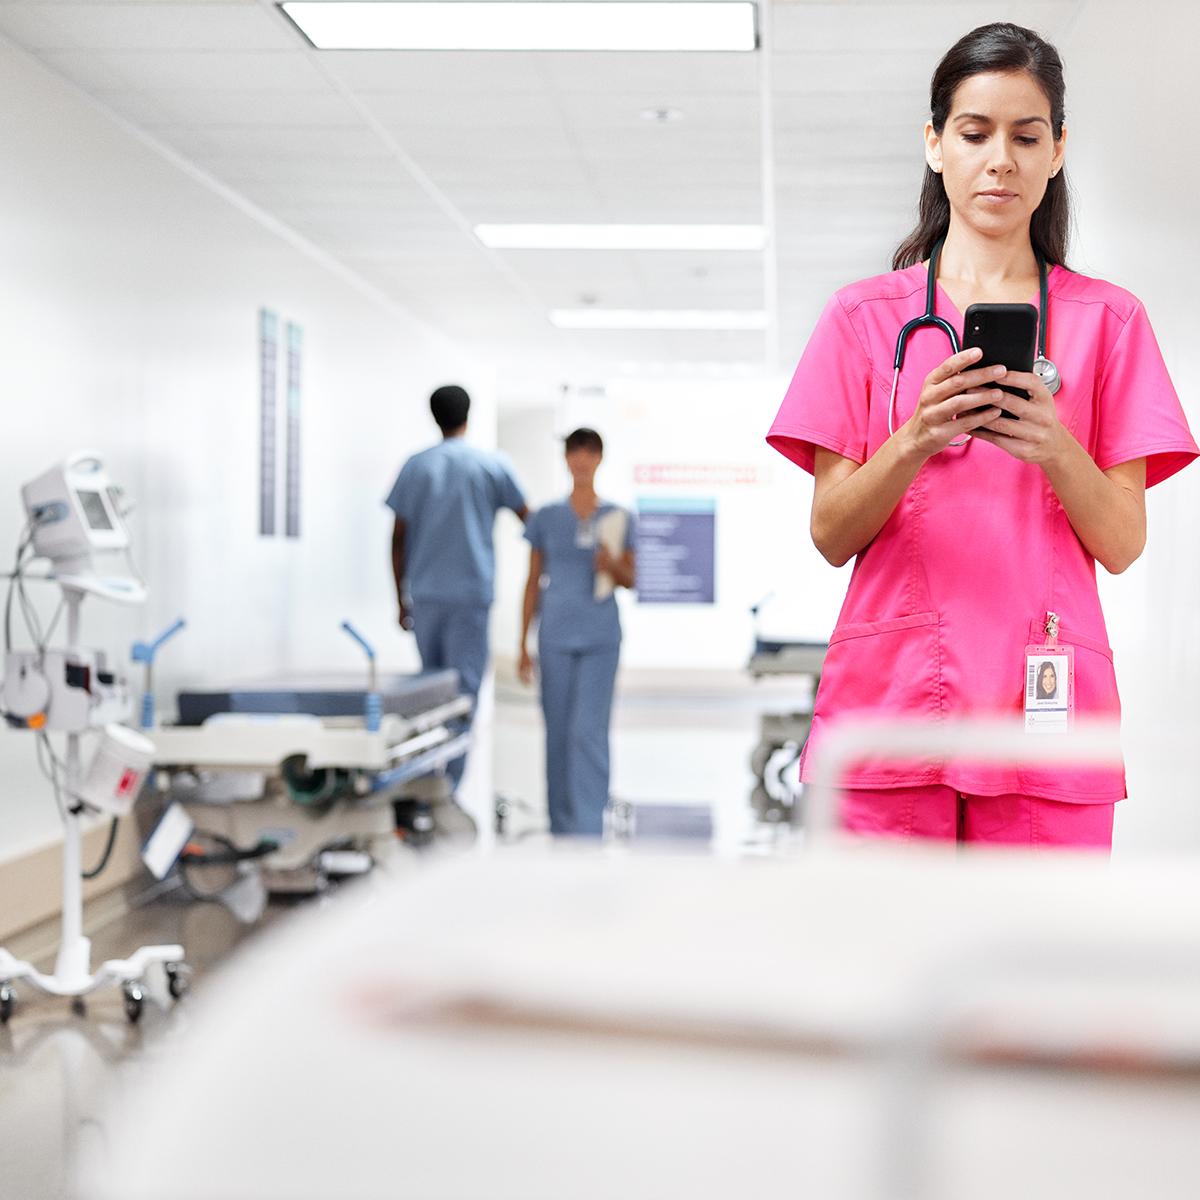 แพทย์หญิงตรวจสอบข้อความบนโทรศัพท์ของเธอขณะที่ยืนอยู่บริเวณทางเดินในโรงพยาบาล เธอสวมชุดสครับสีชมพู